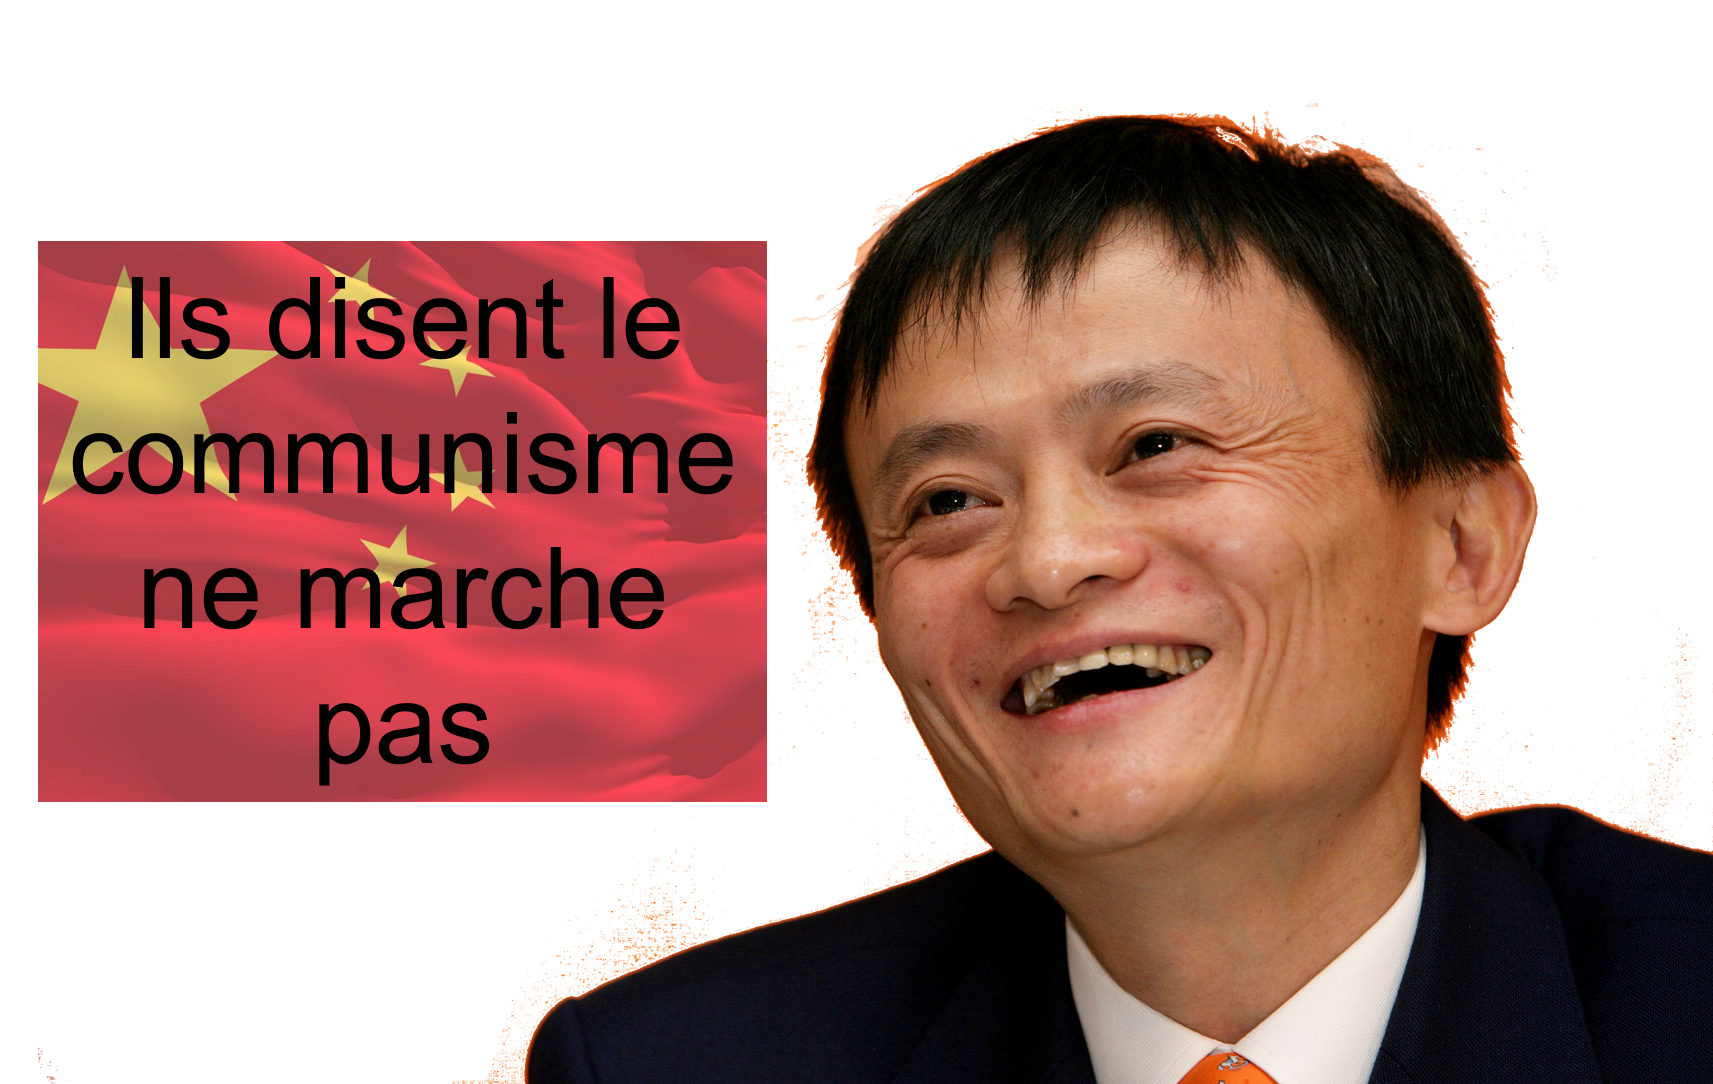 chinois jack chine ma politic parti communisme riche